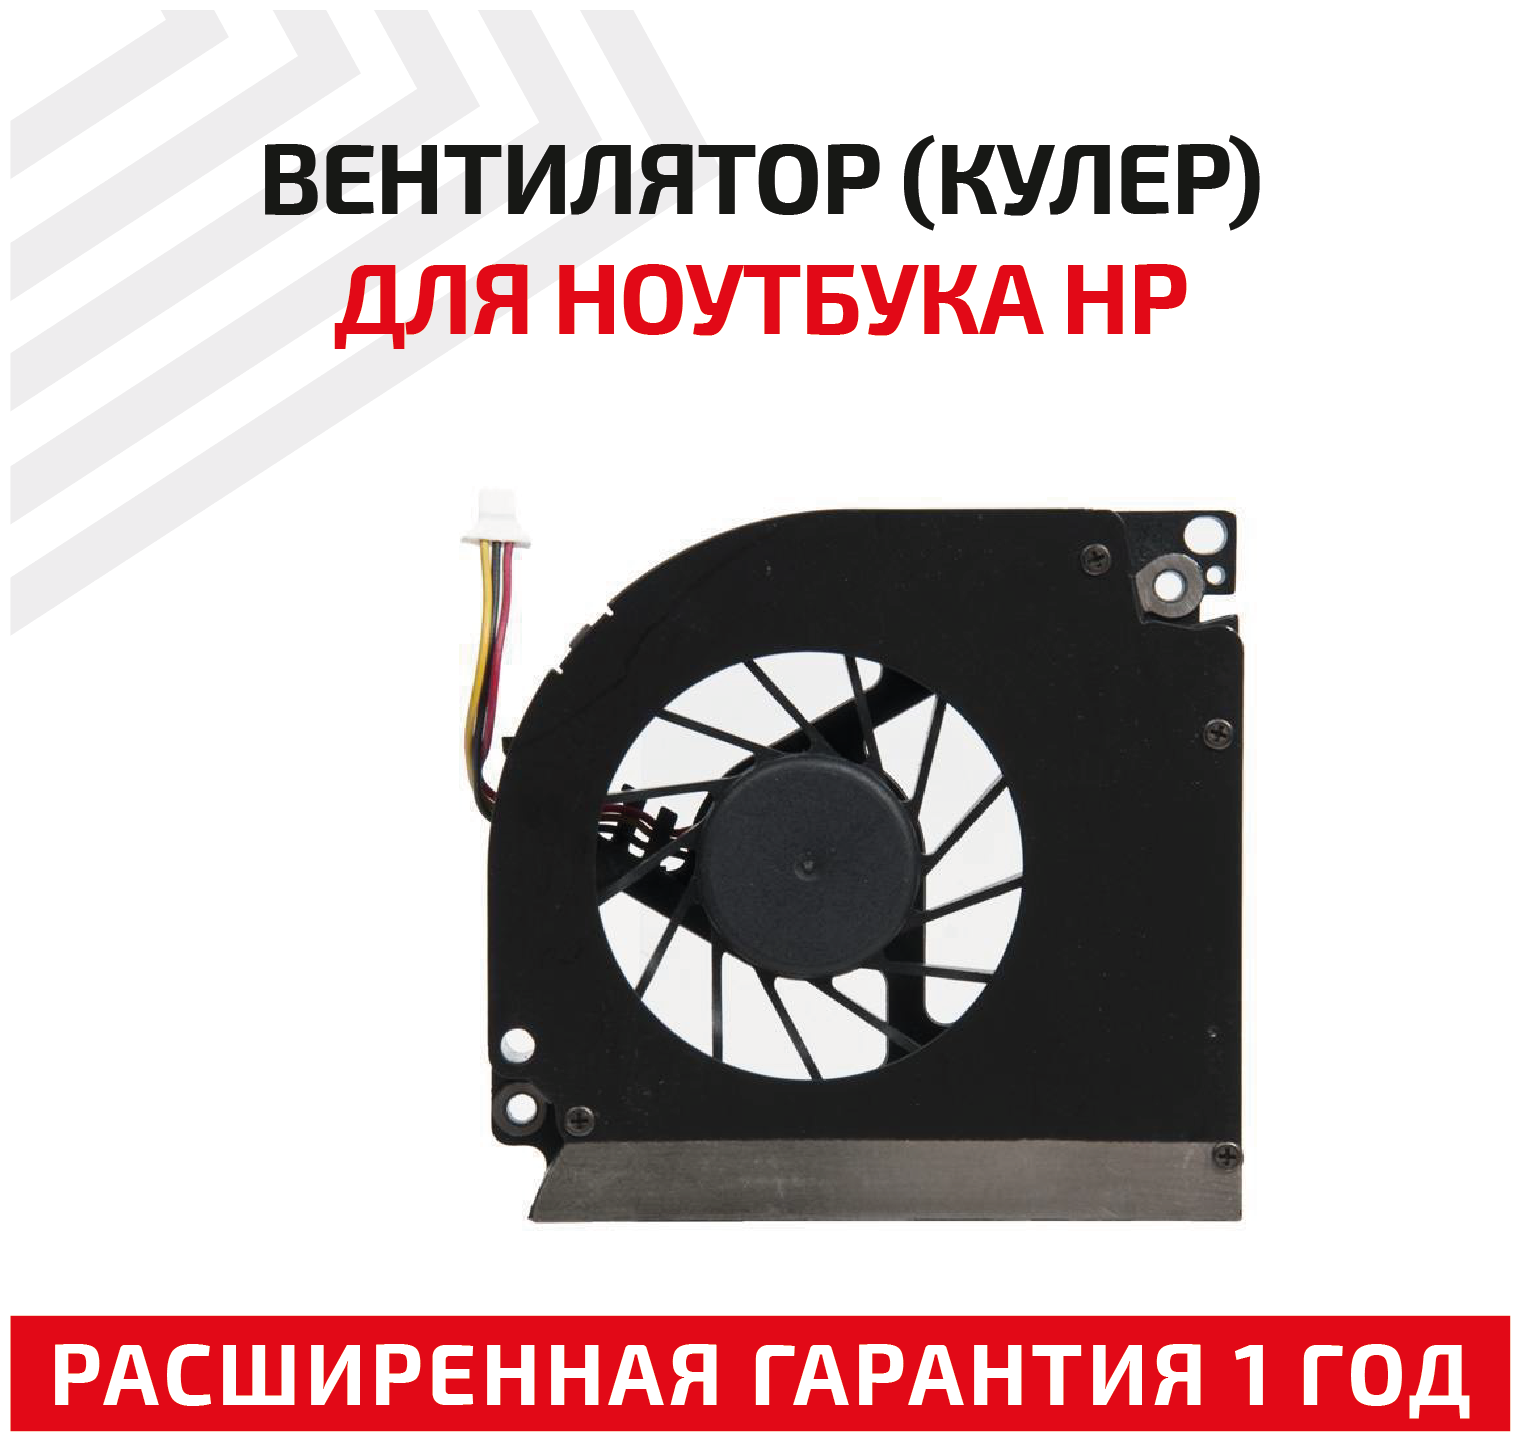 Вентилятор (кулер) для ноутбука HP Compaq 1502, 3-pin